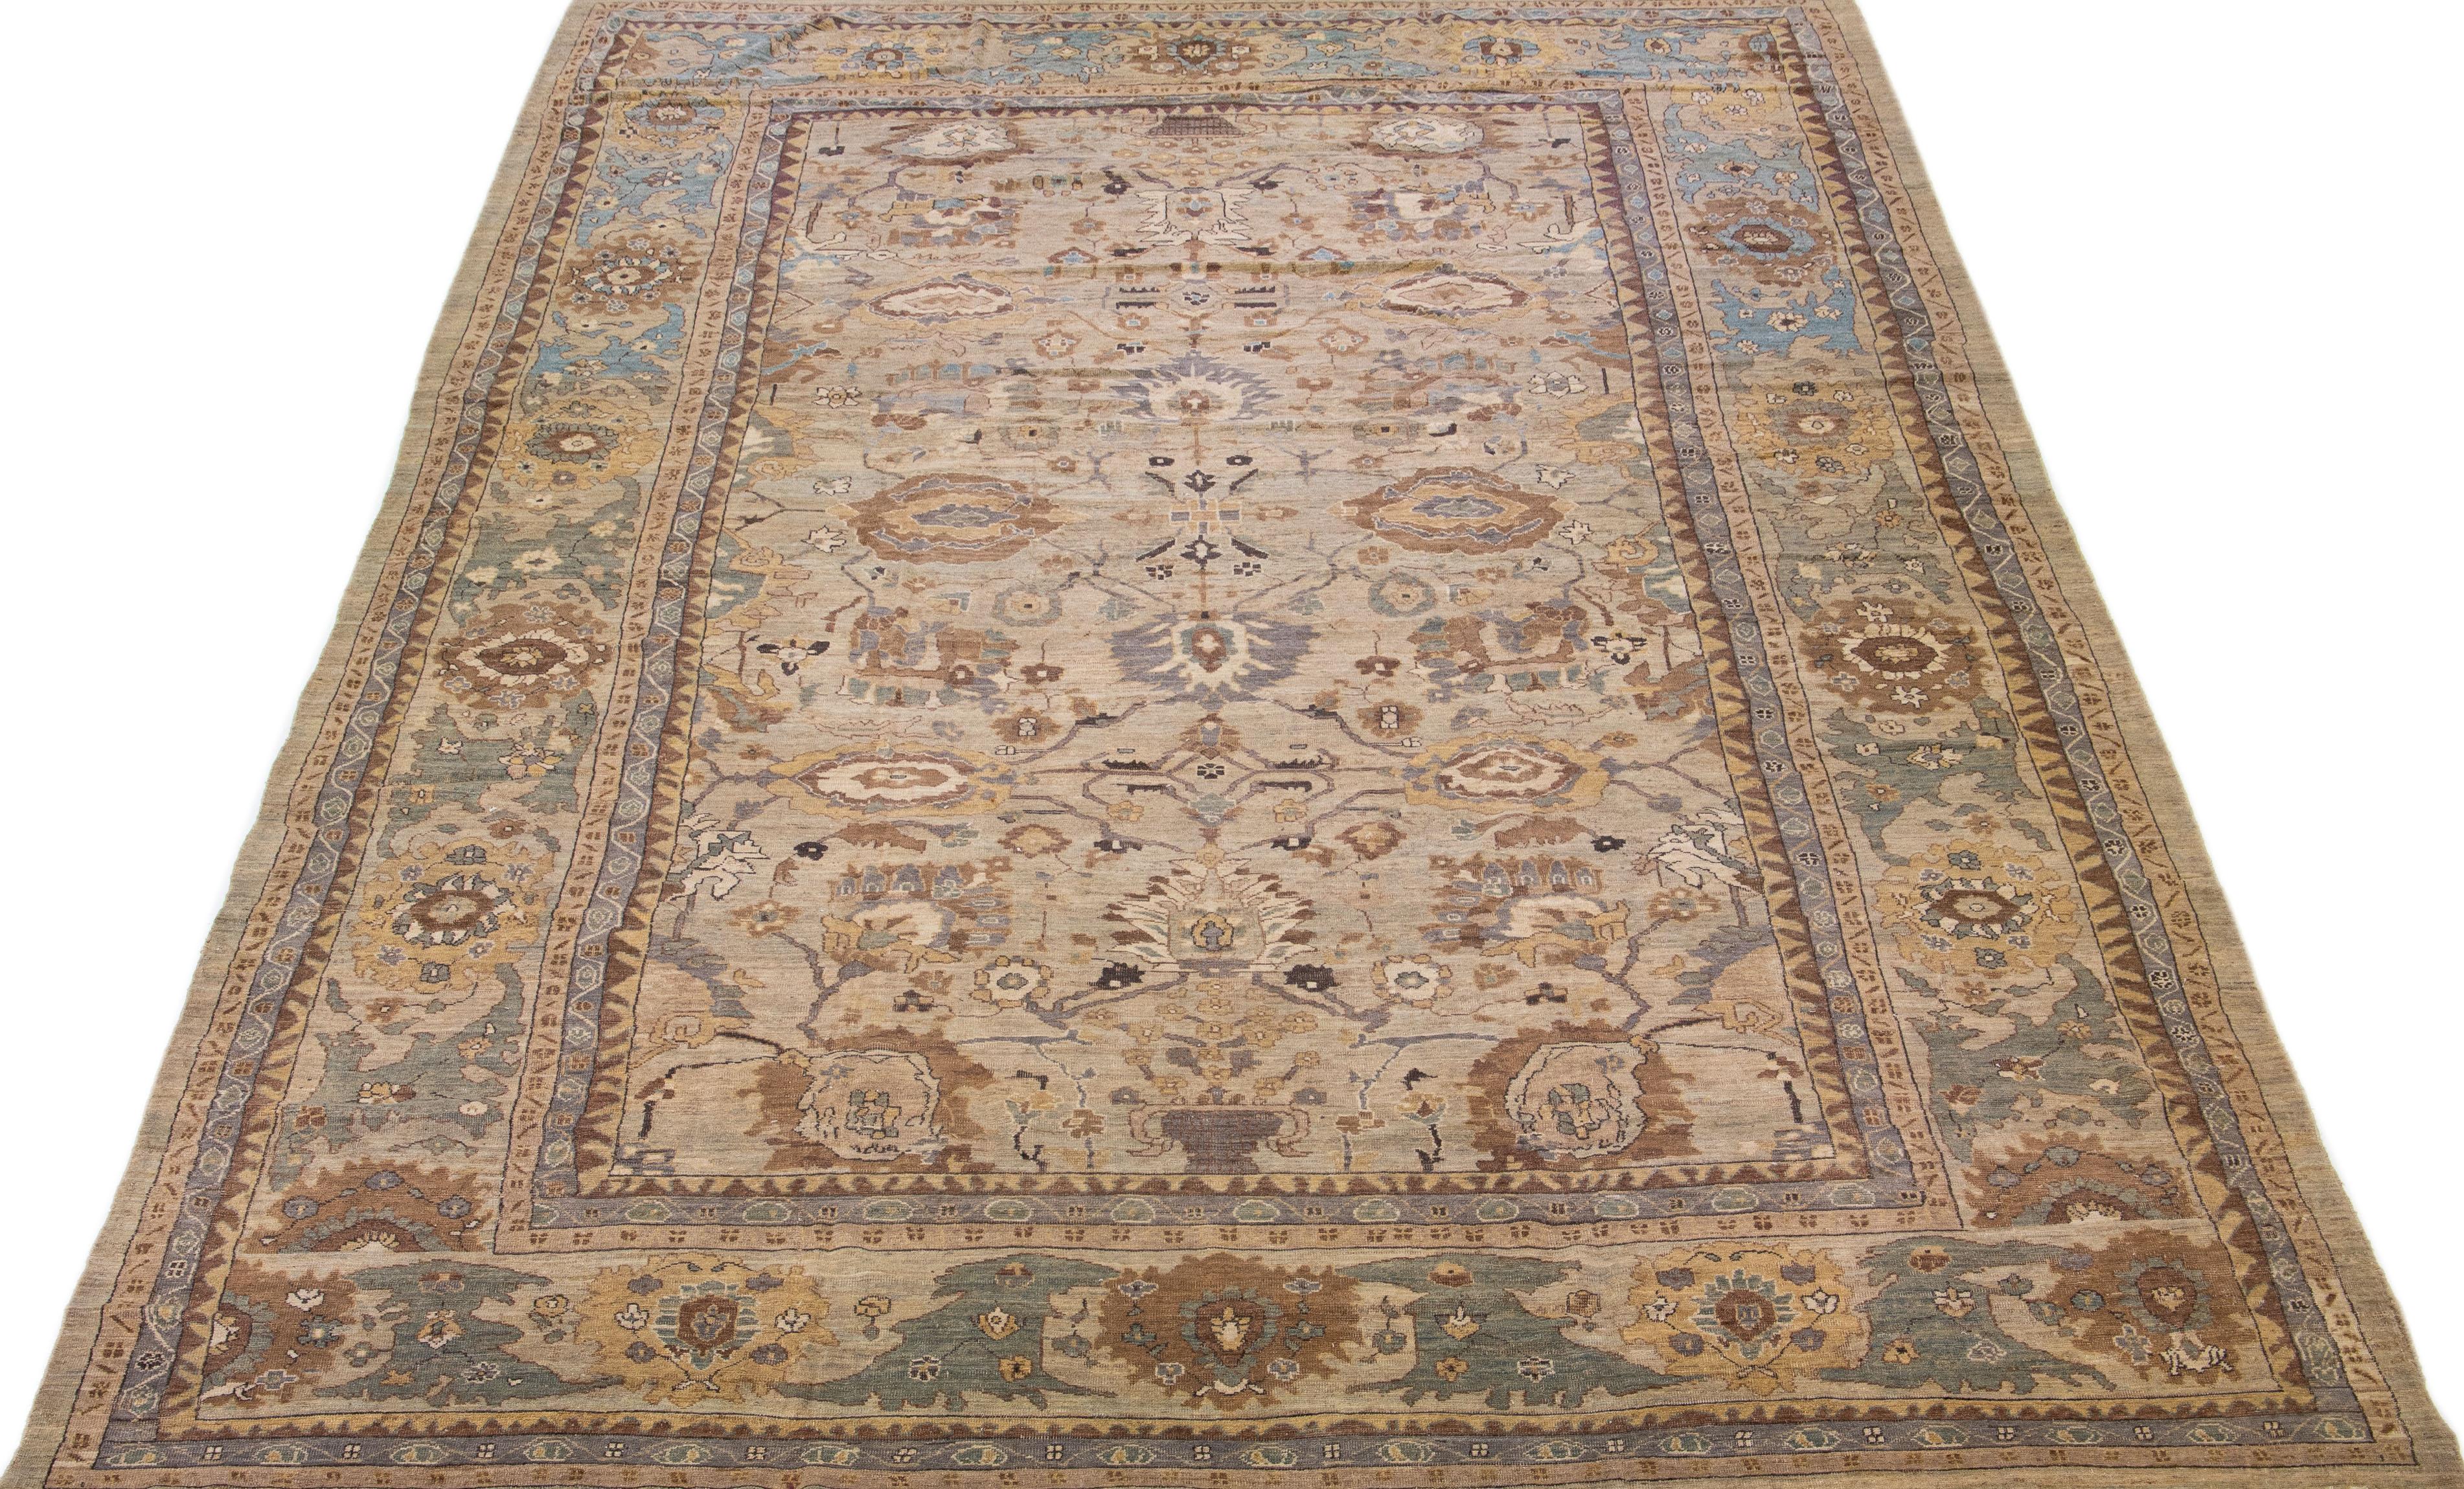 Magnifique tapis moderne Sultanabad en laine nouée à la main avec un champ de couleur marron. Ce tapis a un cadre conçu avec des accents jaunes, bleus et roses dans un superbe motif floral.

Ce tapis mesure : 13'5